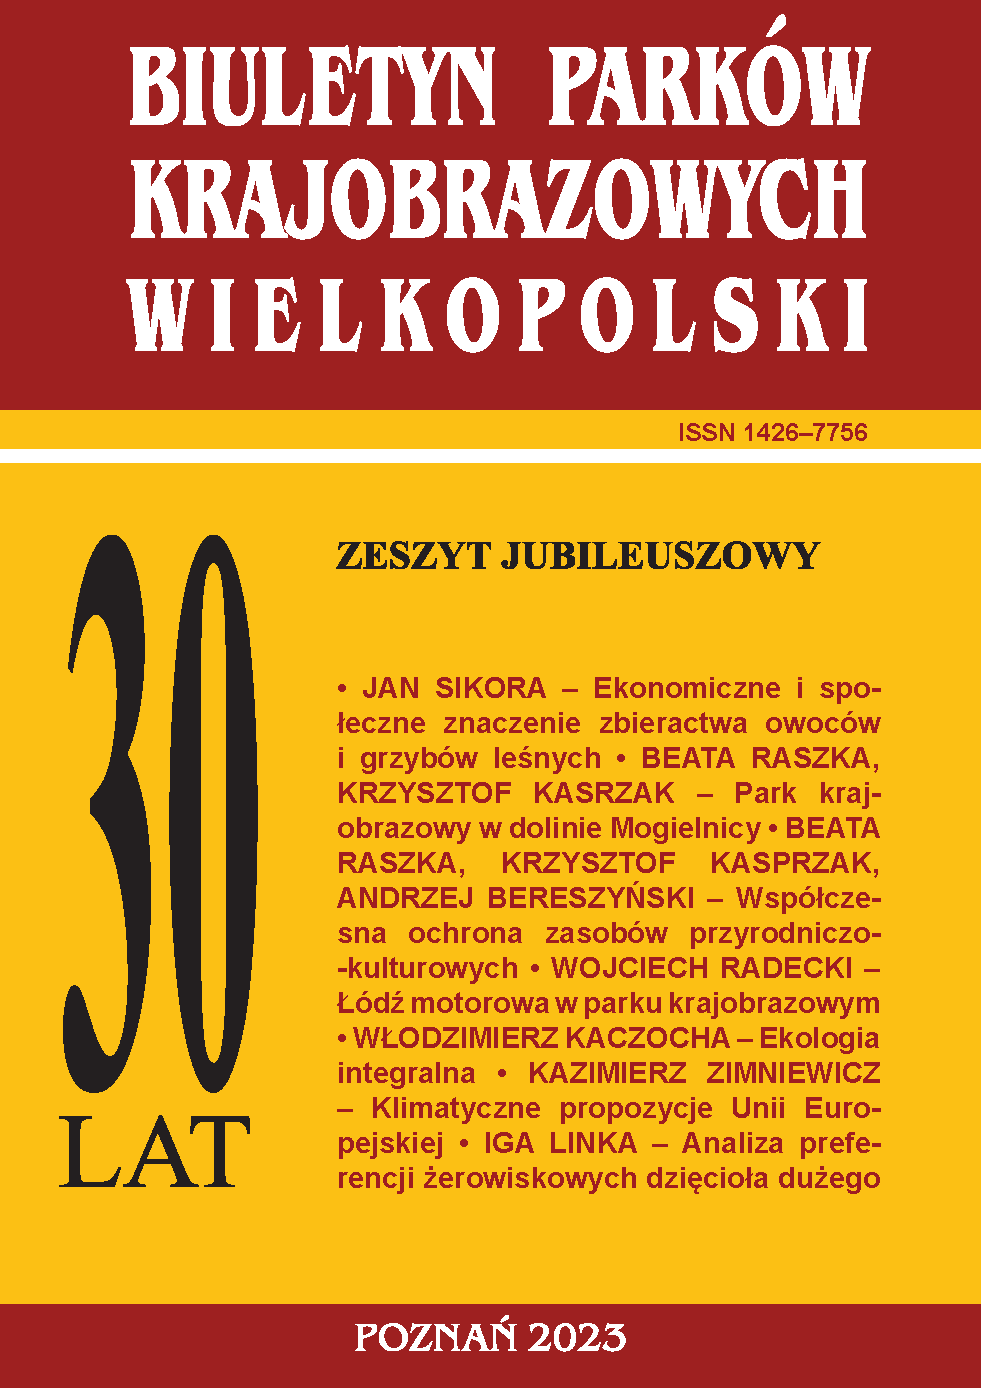 Okładka wydawnictwa Biuletyn Parków Krajobrazowych Wielkopolski 2023 - Numer 30 jubileuszowy